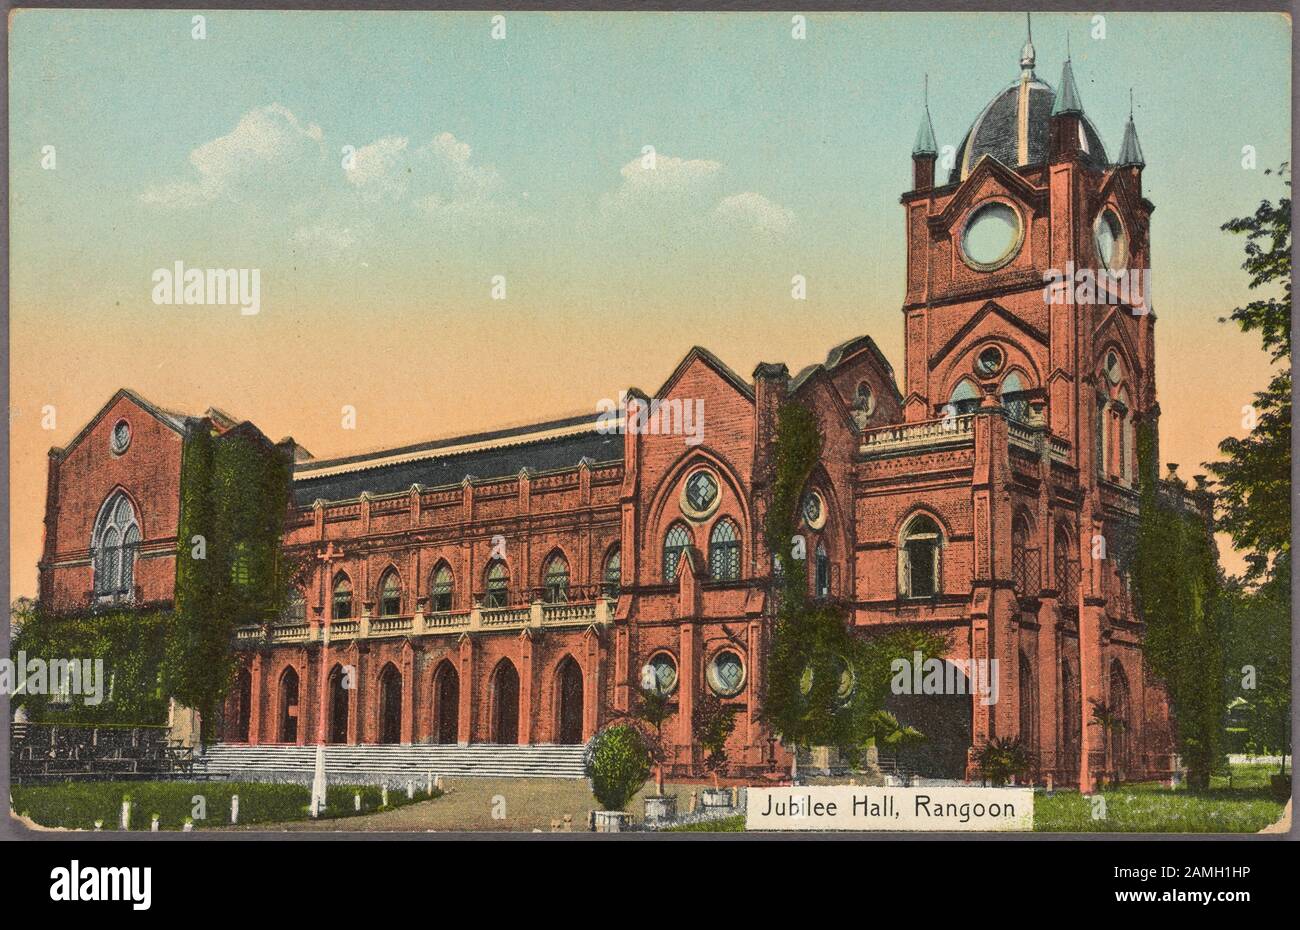 Illustrierte Postkarte mit Jubilee Hall, erbaut im Jahr 1897 zum Gedenken an das Silberne Jubiläum der Königin Victoria in Rangun, dem heutigen Yangon, Myanmar (Birma), herausgegeben von D. A. Ahuja, 1910. Aus der New York Public Library. () Stockfoto